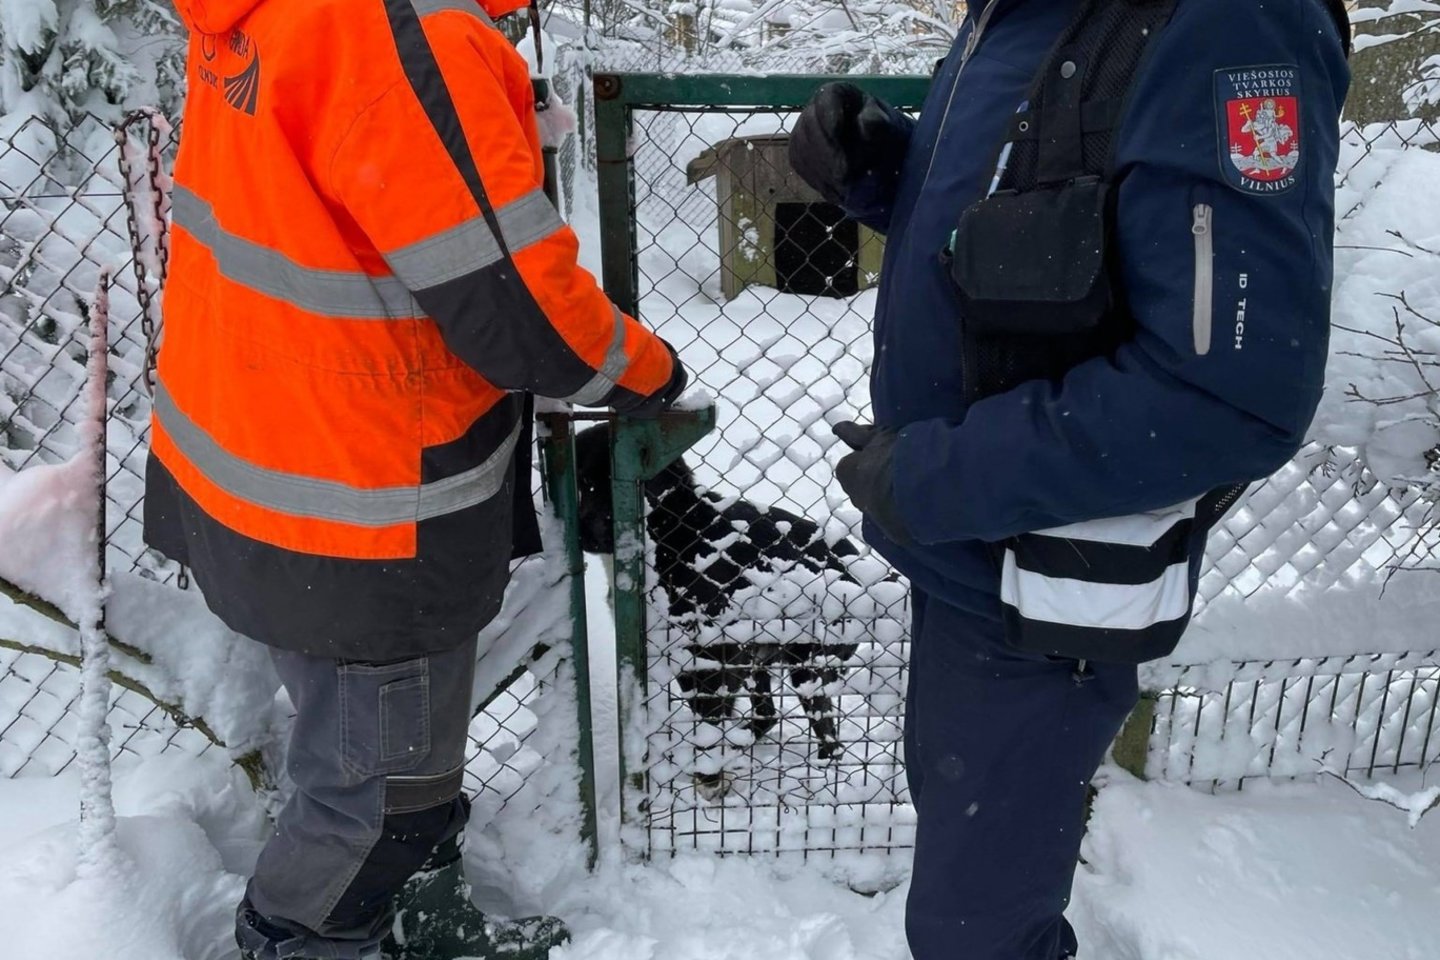  Vilniuje konfiskuotas išbadėjęs šuniukas, kurį šeimininkai badu marino ne pirmą kartą.<br> ggi.lt nuotr.